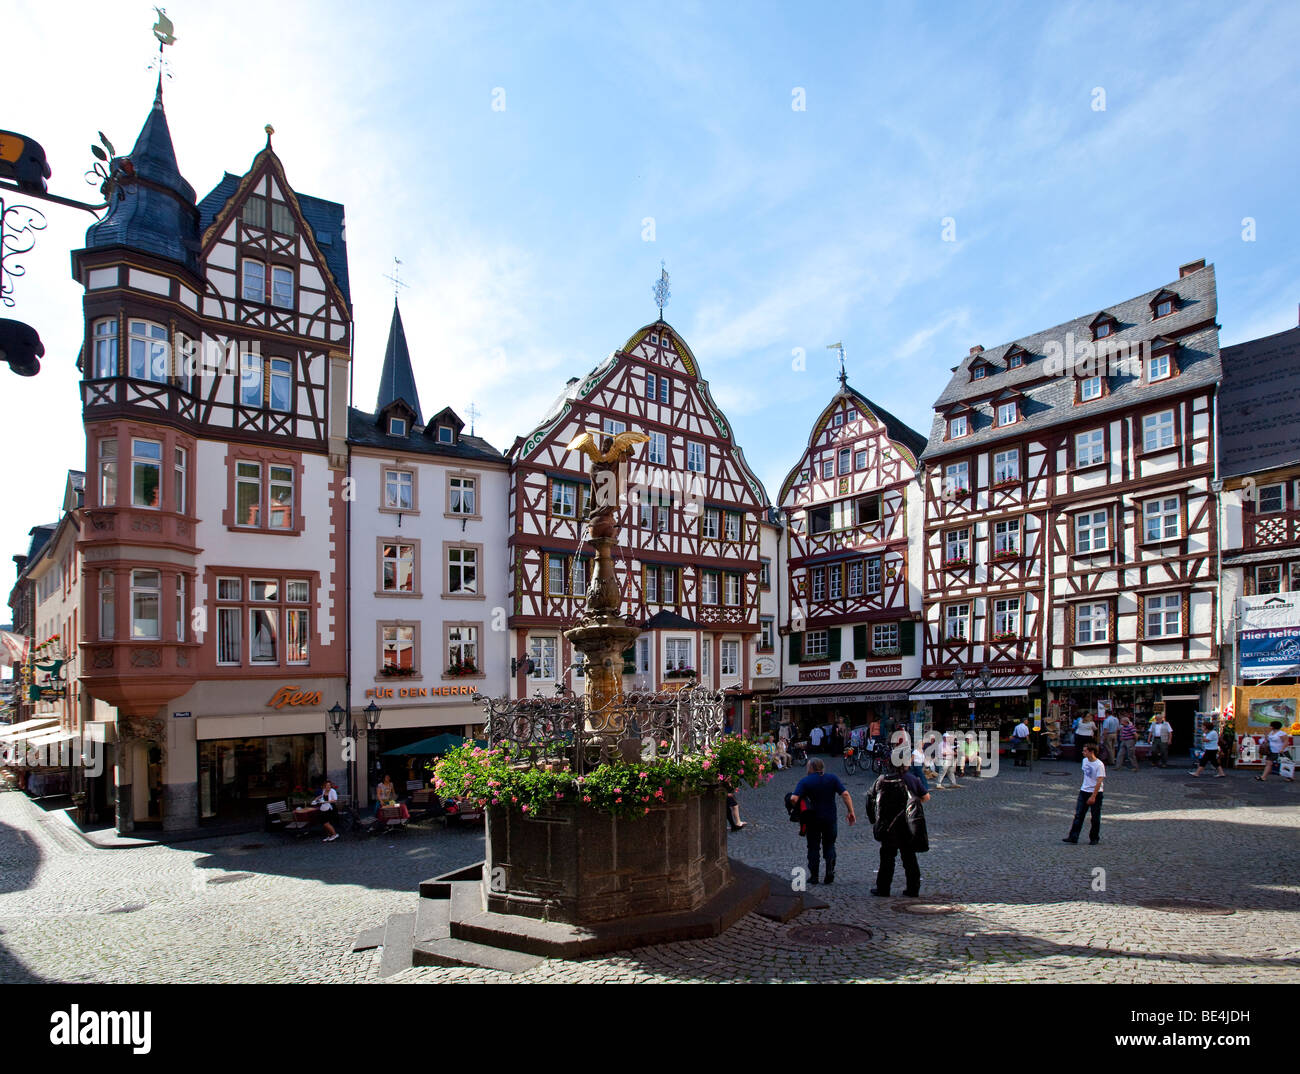 The historic Bernkastel marketplace, Bernkastel-Kues, Mosel river, Rhineland-Palatinate, Germany, Europe Stock Photo